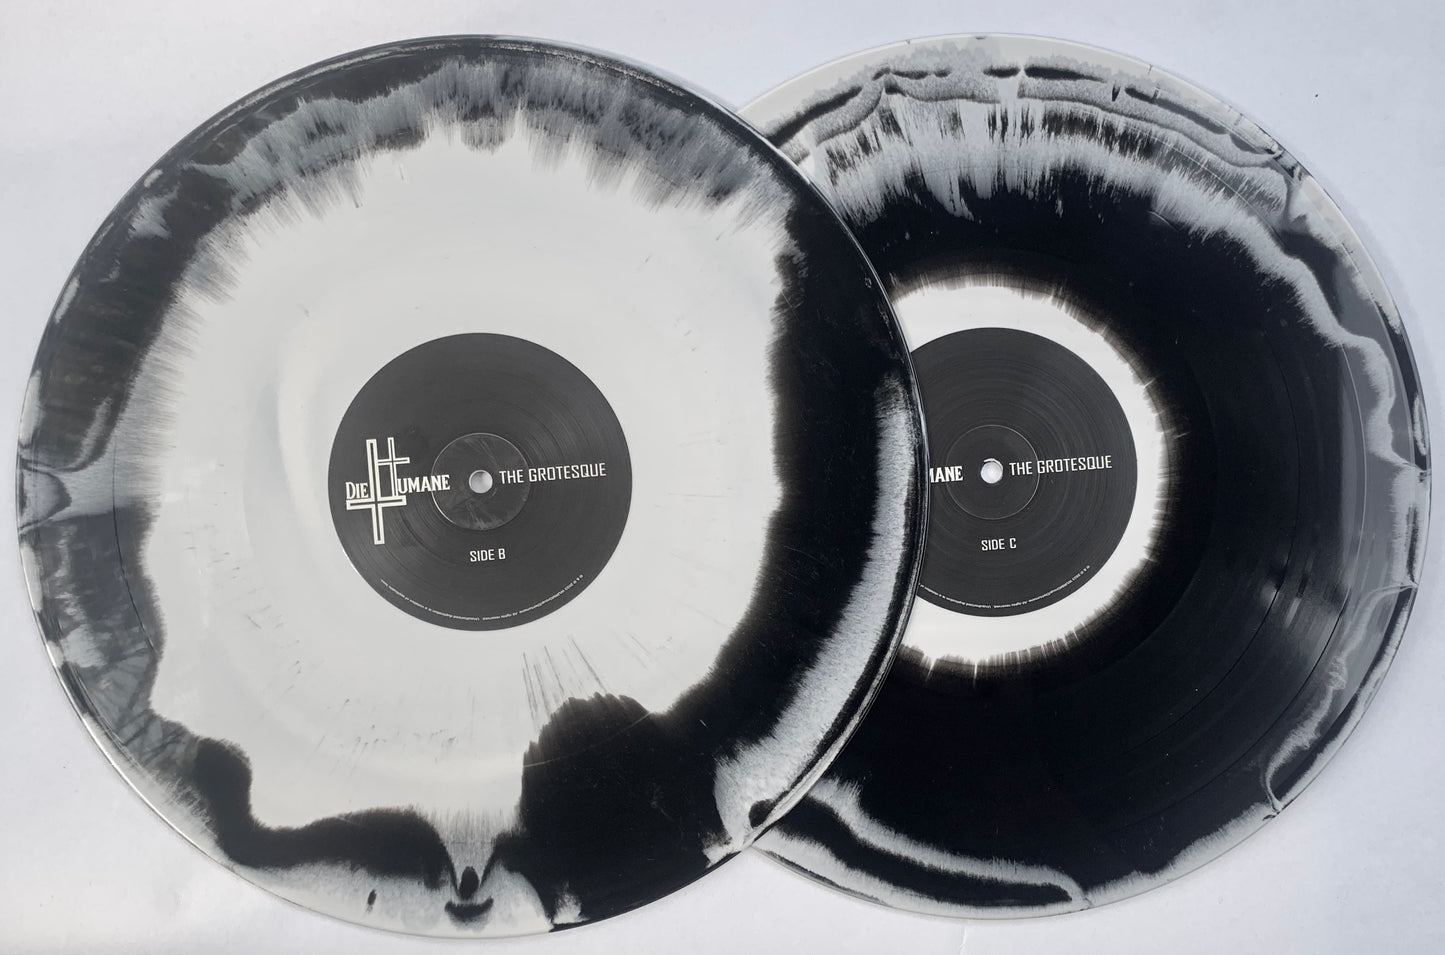 DieHumane - The Grotesque - Vinyl - Double Album (Pre-Order)